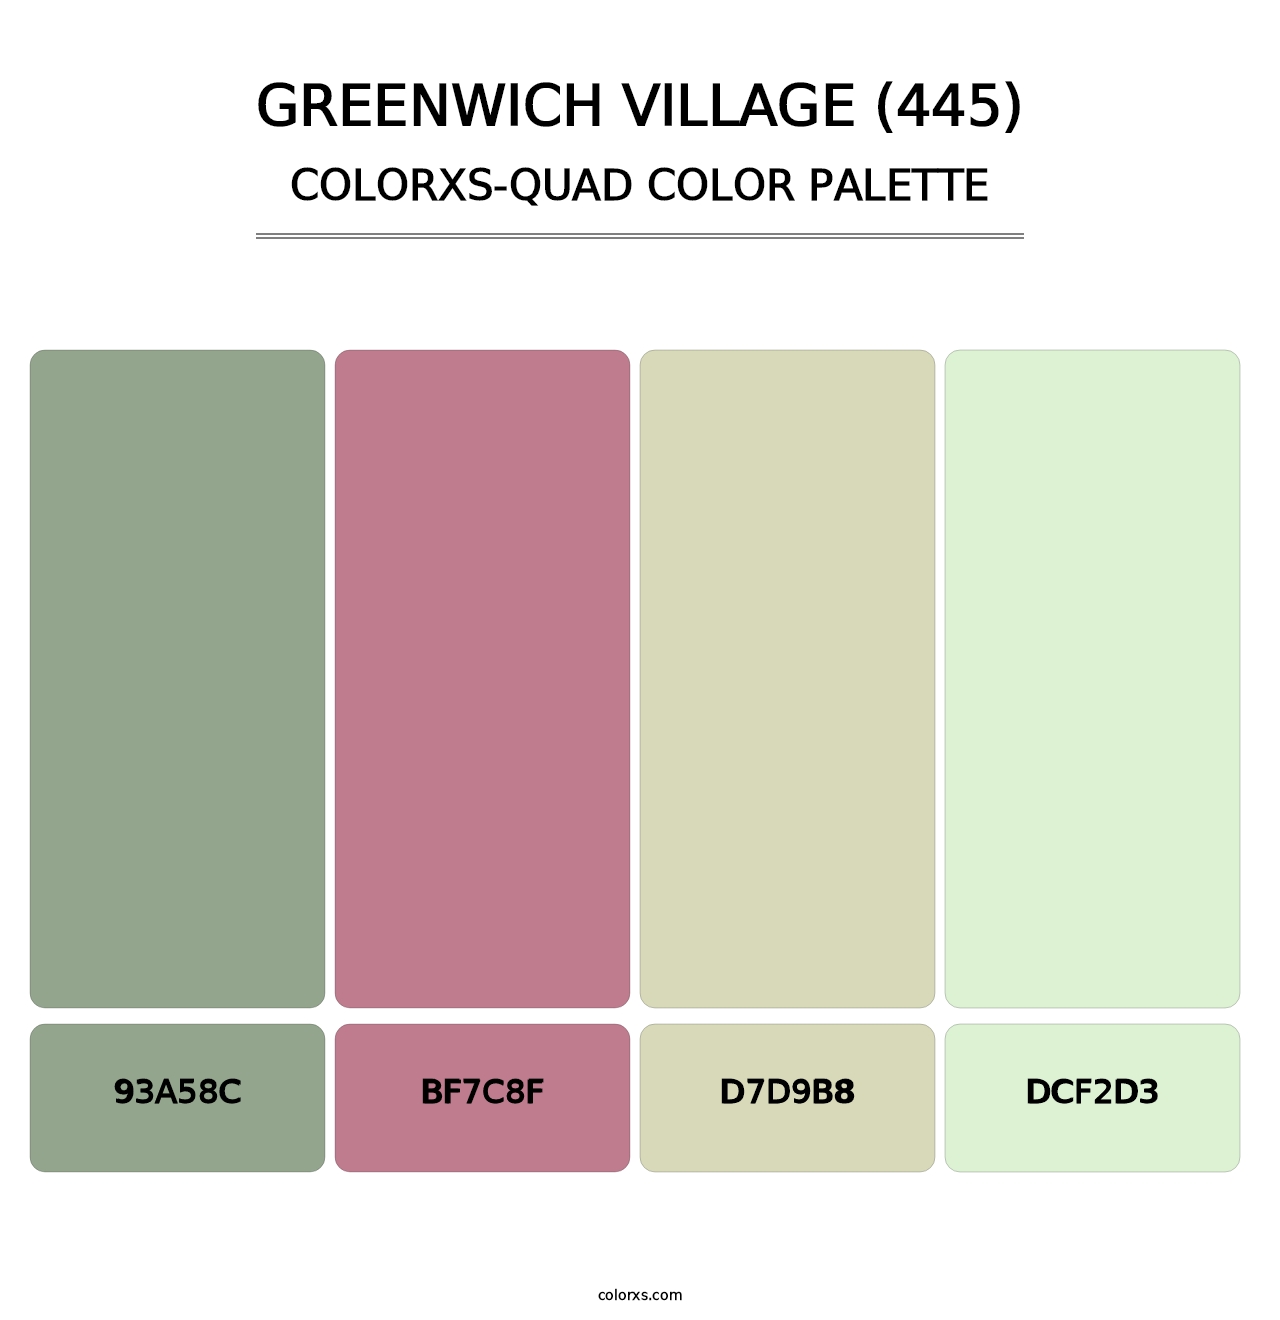 Greenwich Village (445) - Colorxs Quad Palette